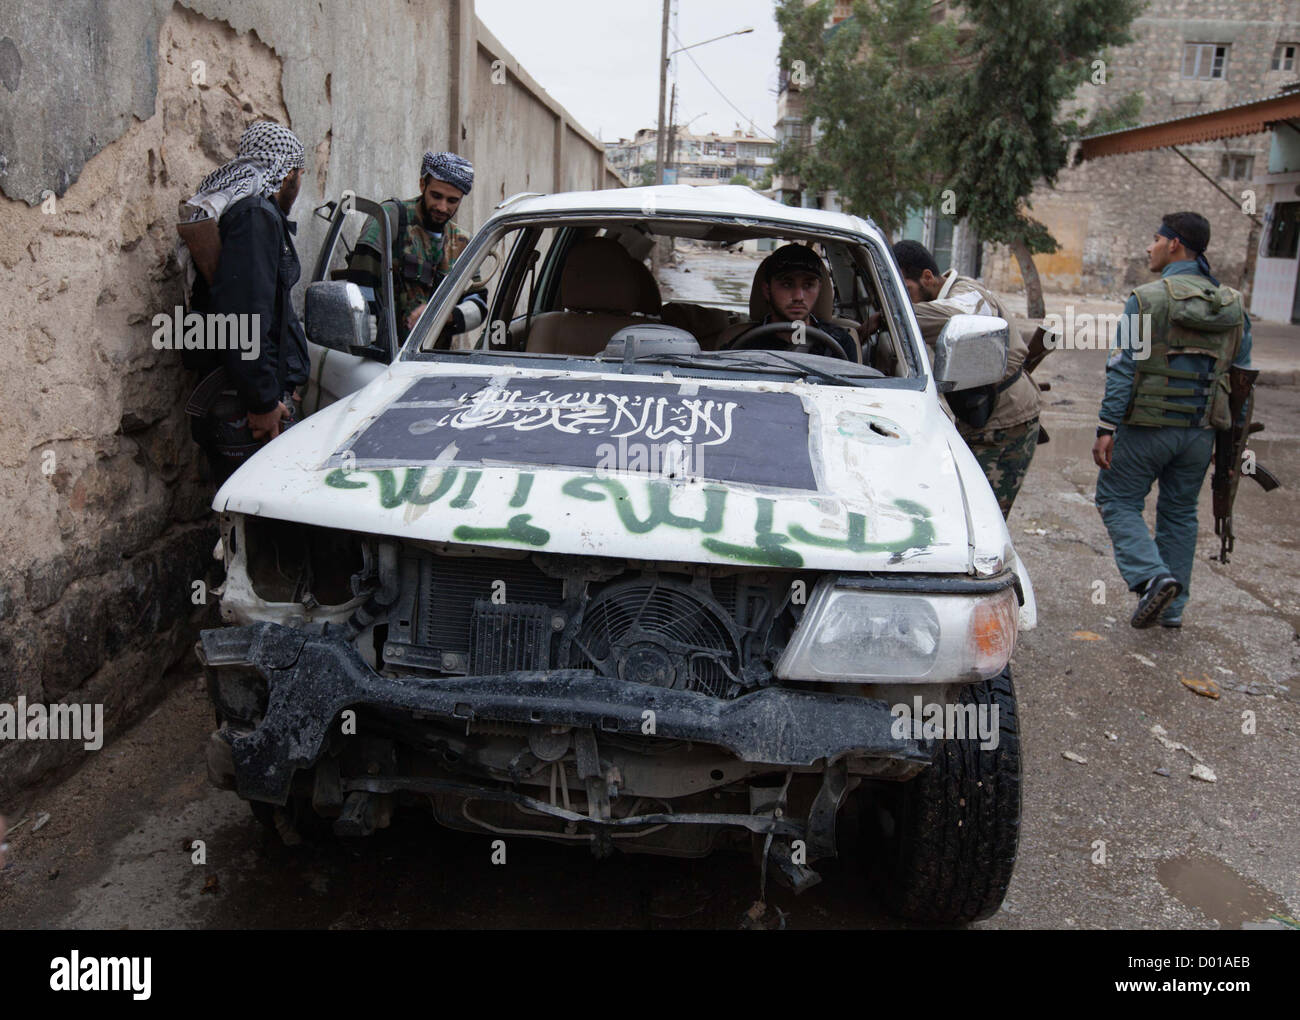 25 octobre 2012 - Alep, Syrie : l'Armée syrienne libre membres montent dans une voiture avant et fonctionnement Karmal AL Jabal. Banque D'Images